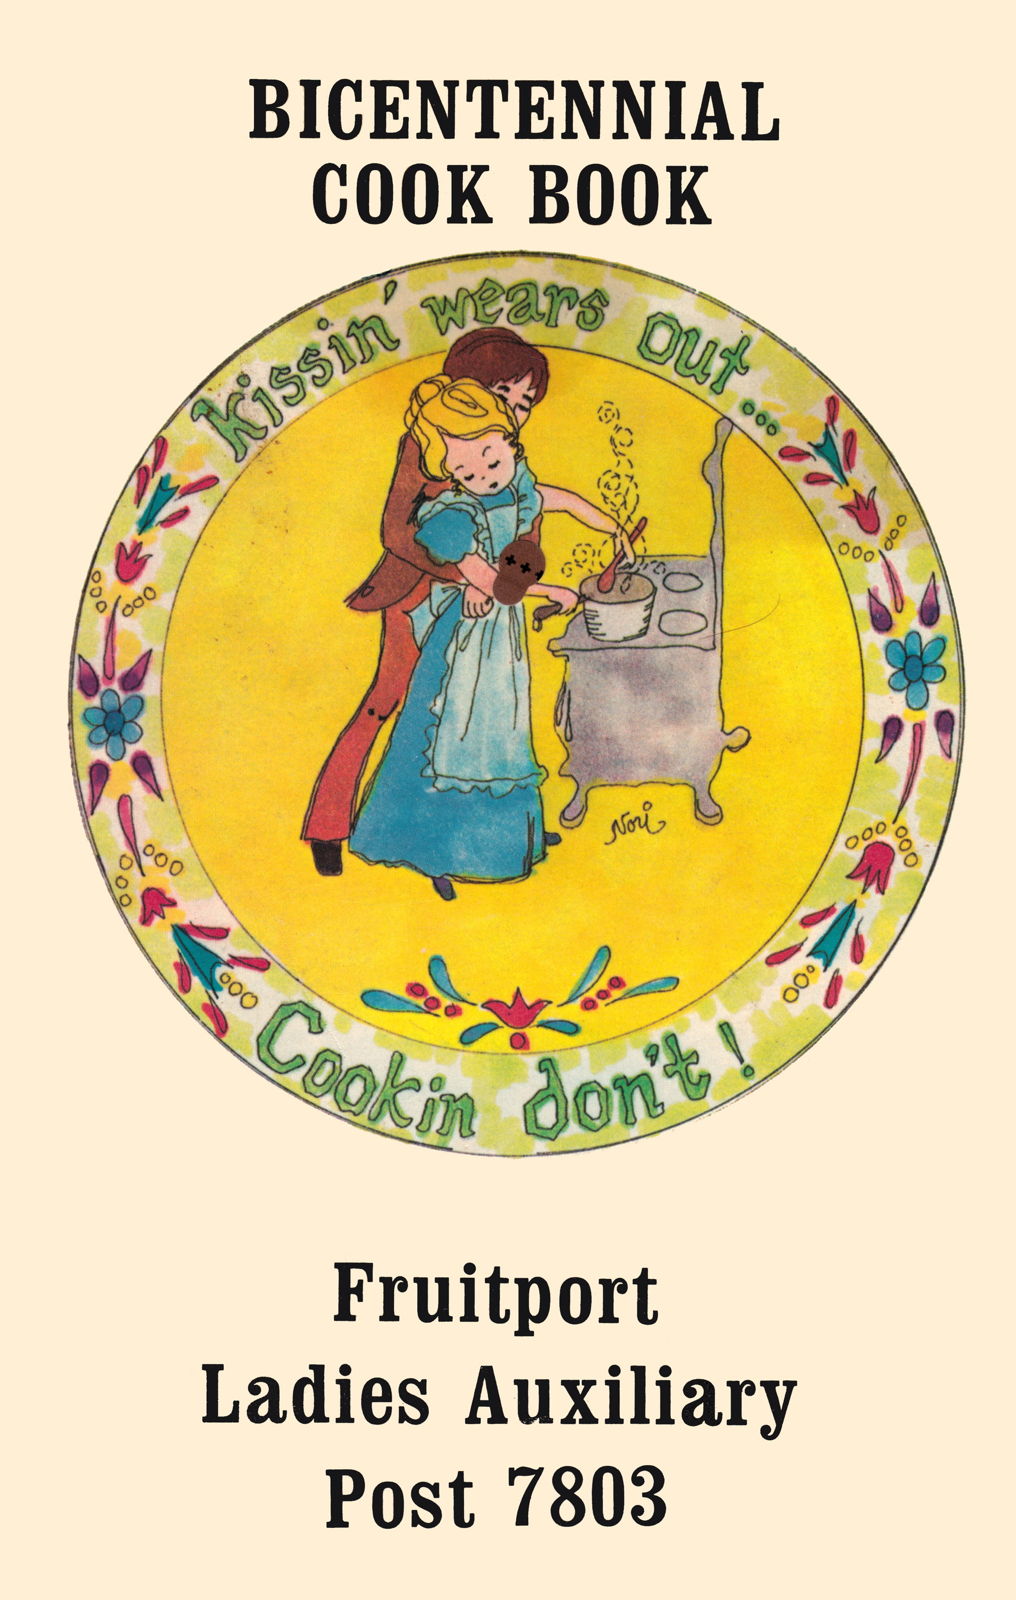 Fruitport Bicentennial Cookbook